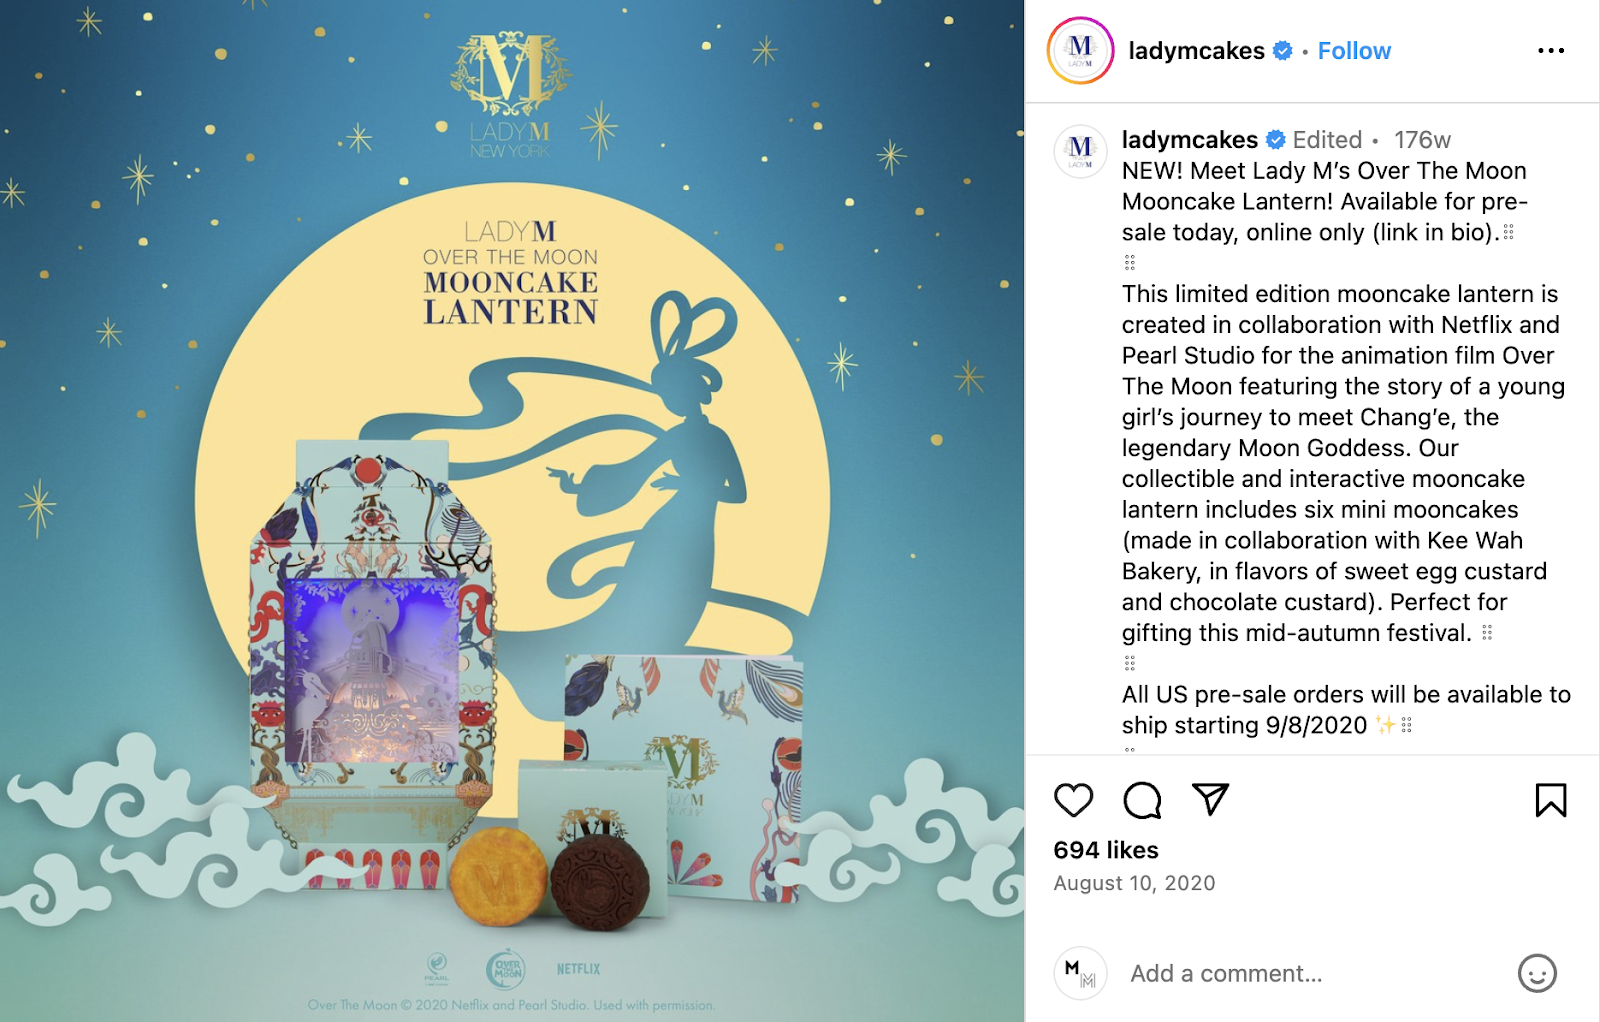 Idées marketing pour les restaurants : la marque de desserts Lady M a créé une lanterne à gâteau de lune en édition limitée en partenariat avec Netflix.